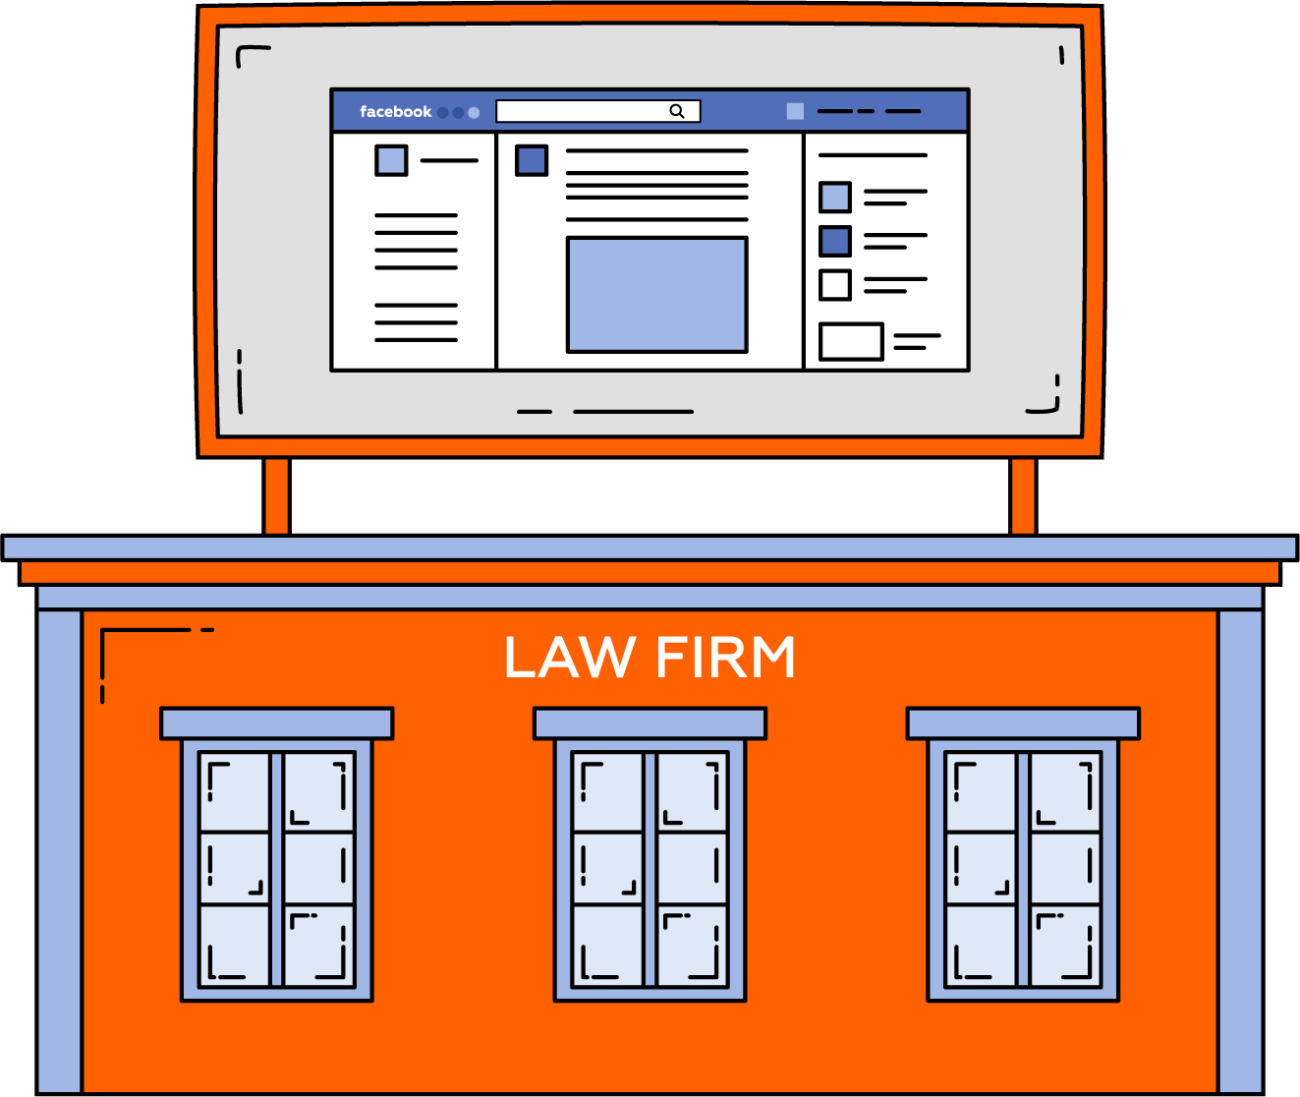 law firm with digital marketing billboard